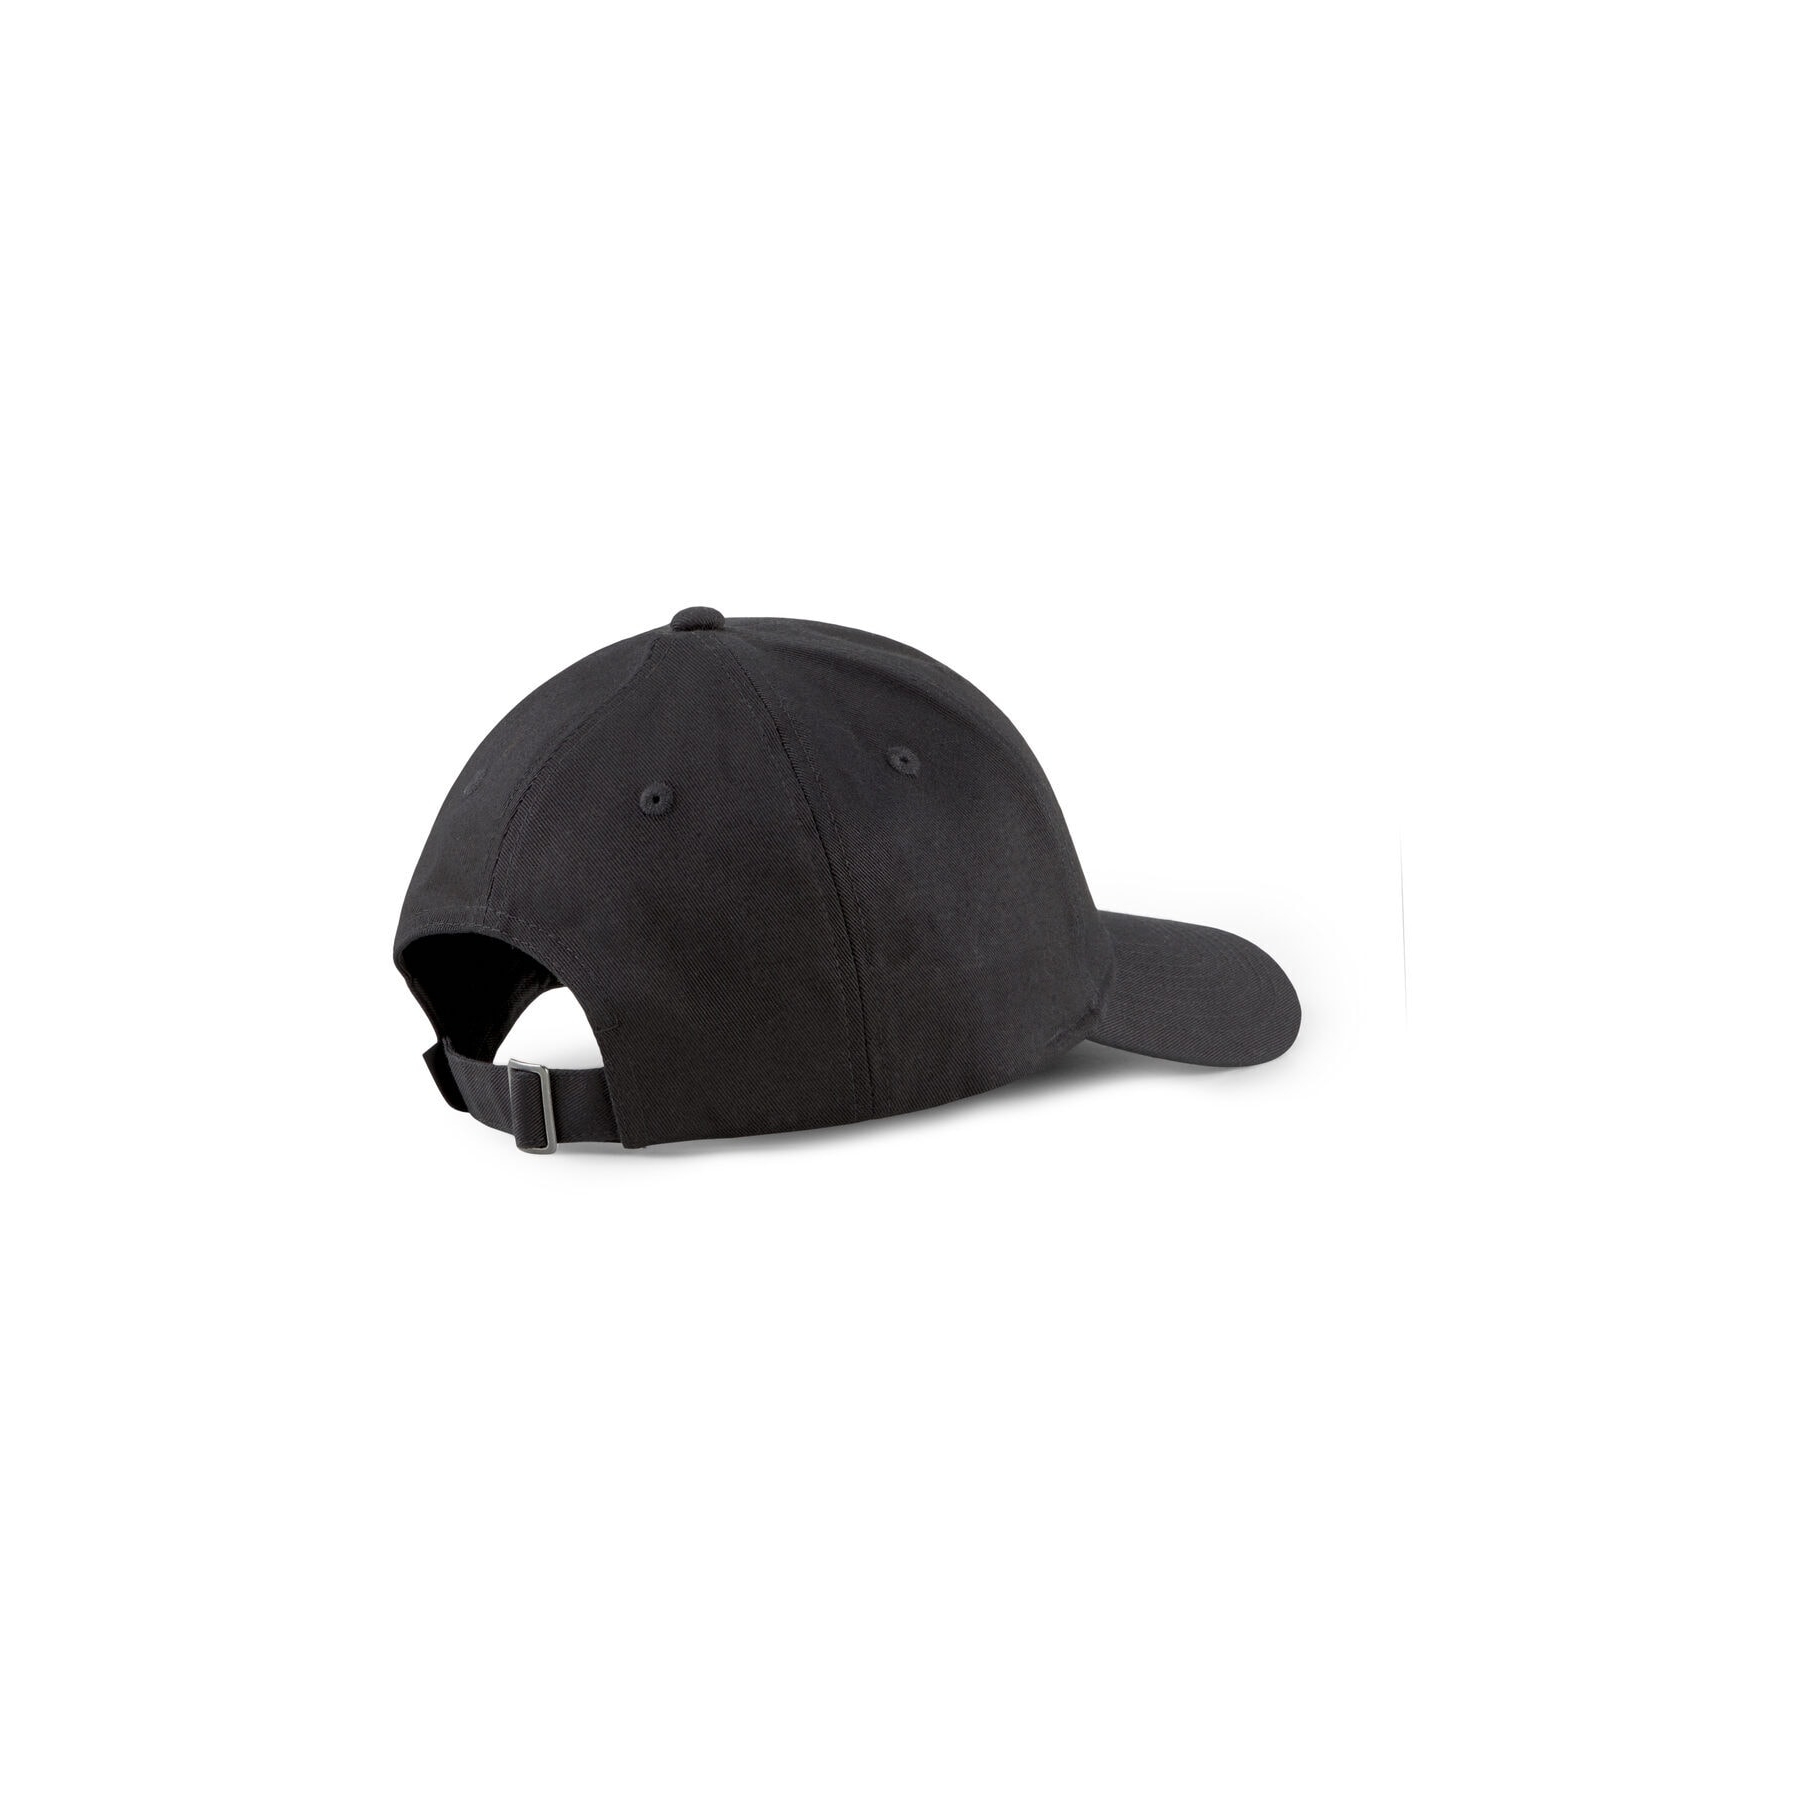 Puma Archive Siyah Şapka (022554-15)